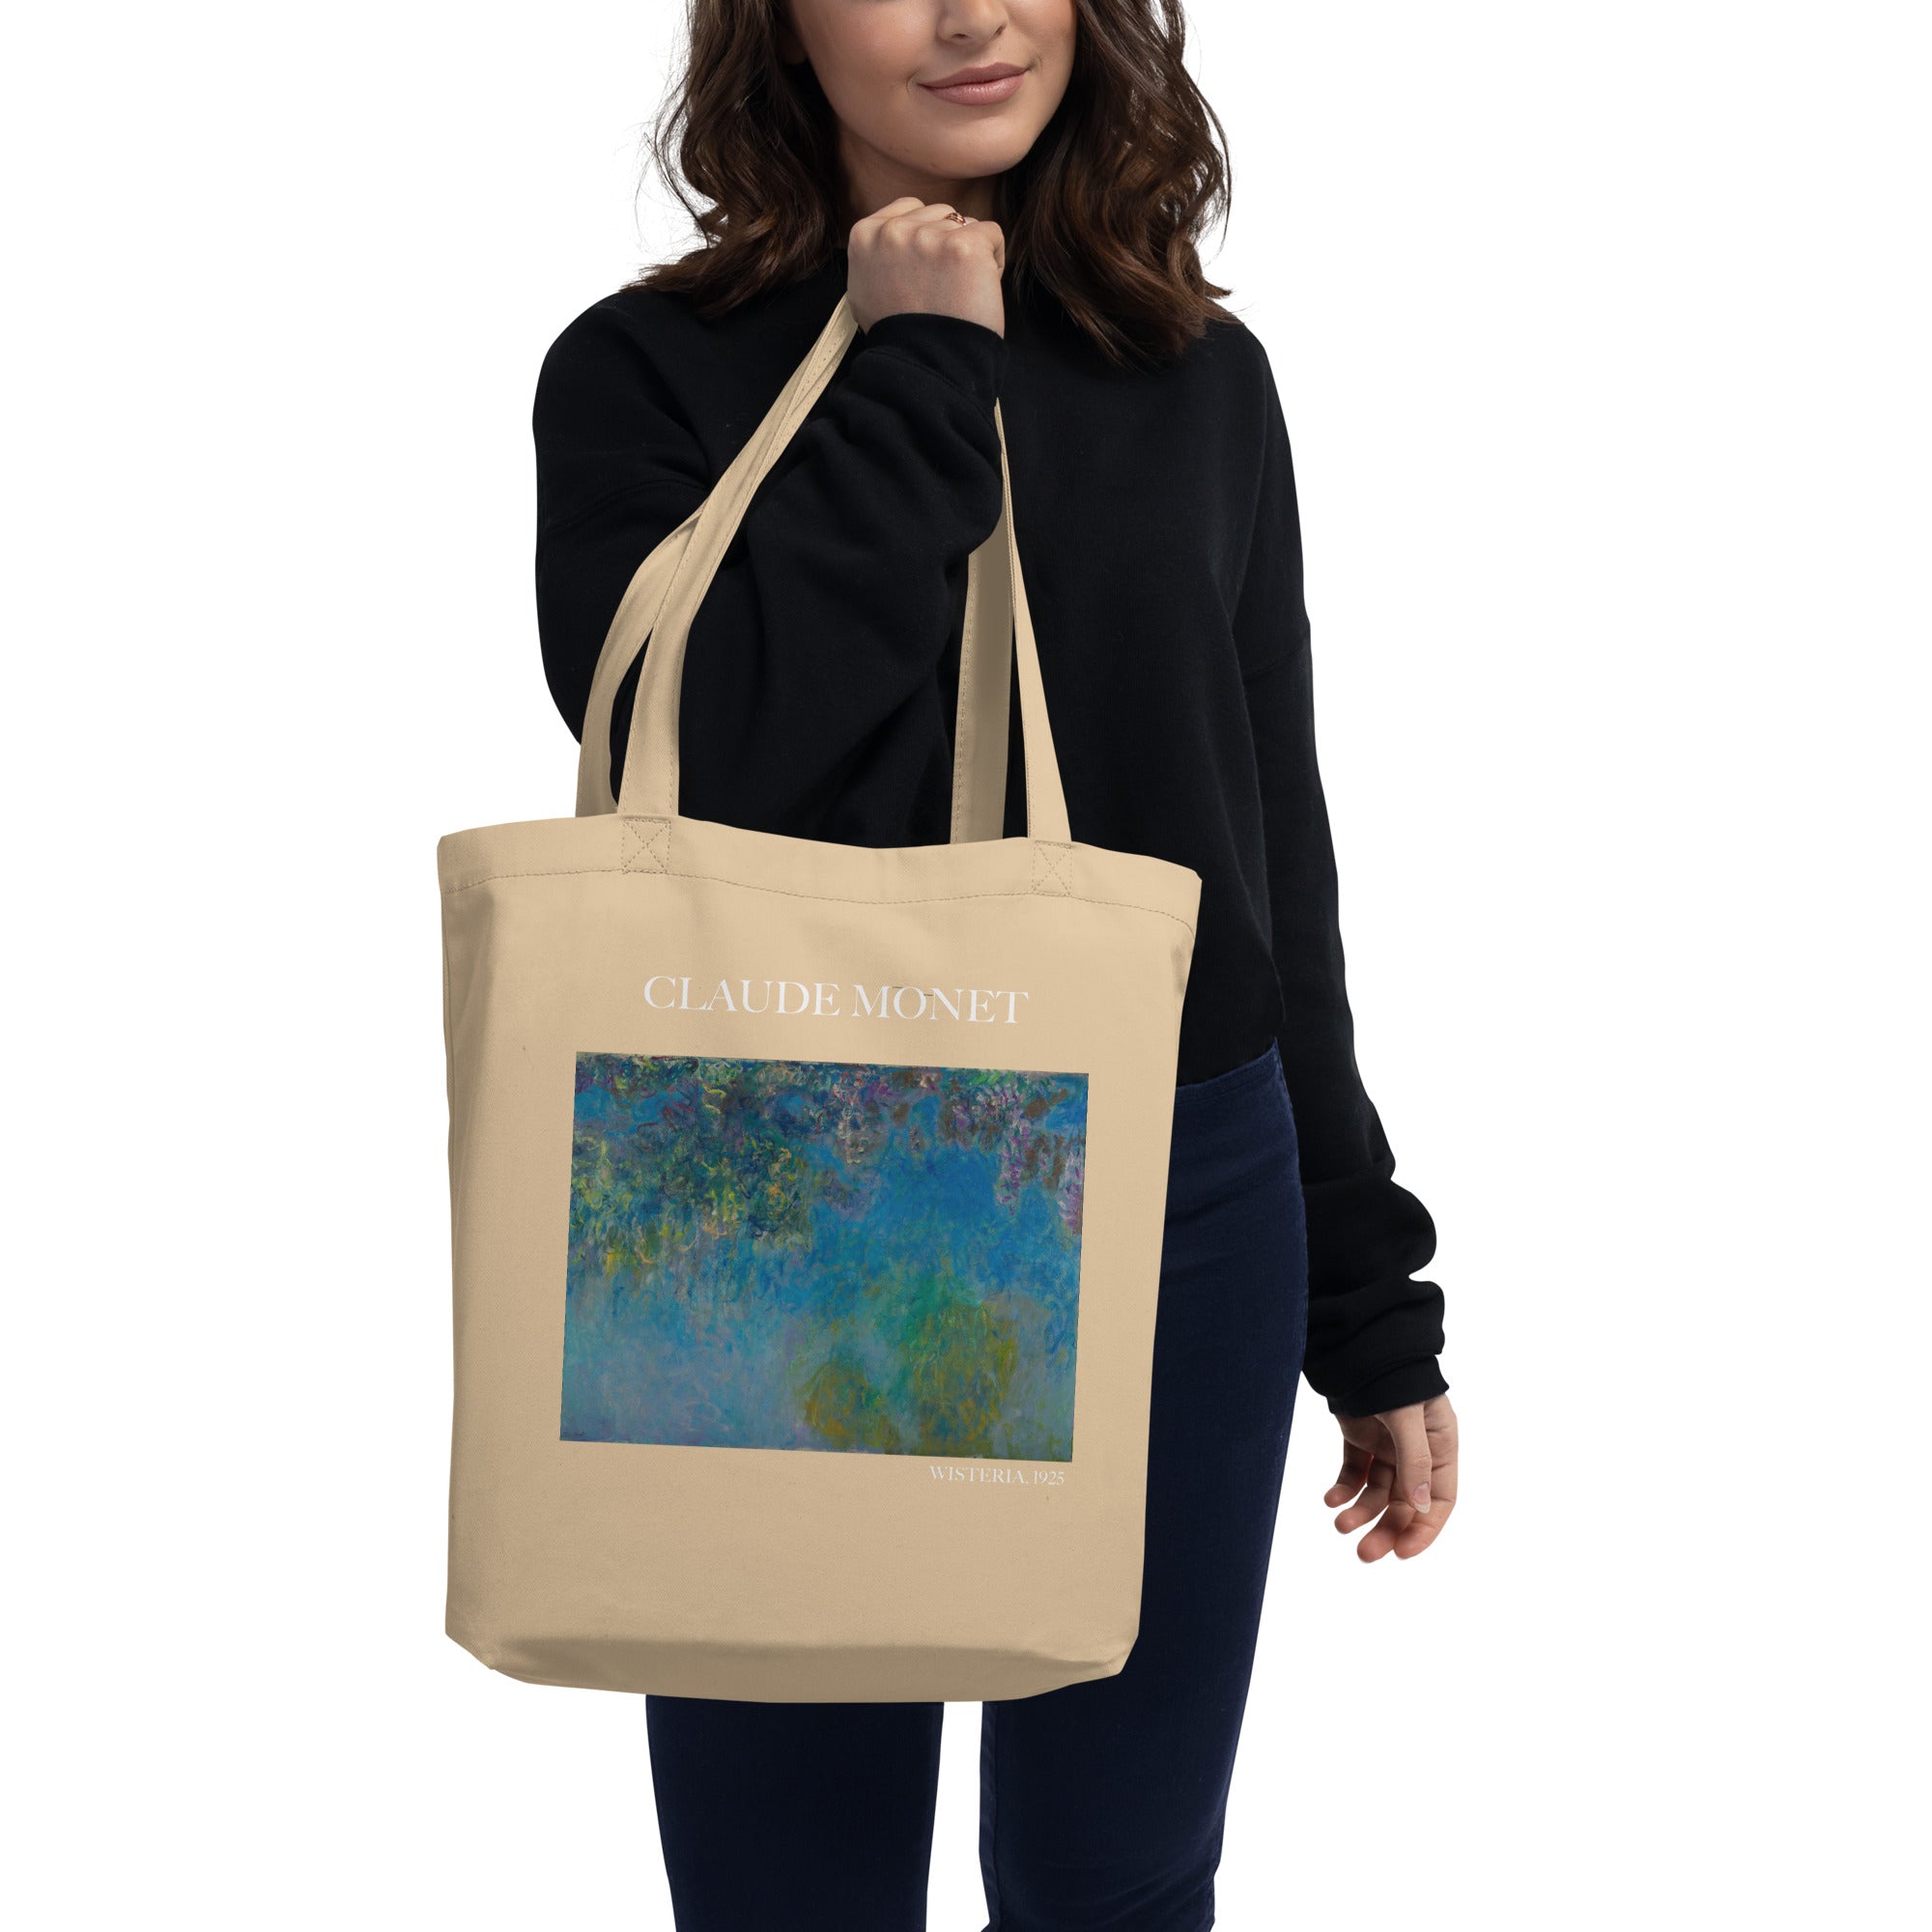 Claude Monet 'Wisteria' berühmtes Gemälde Tragetasche | Umweltfreundliche Kunst Tragetasche